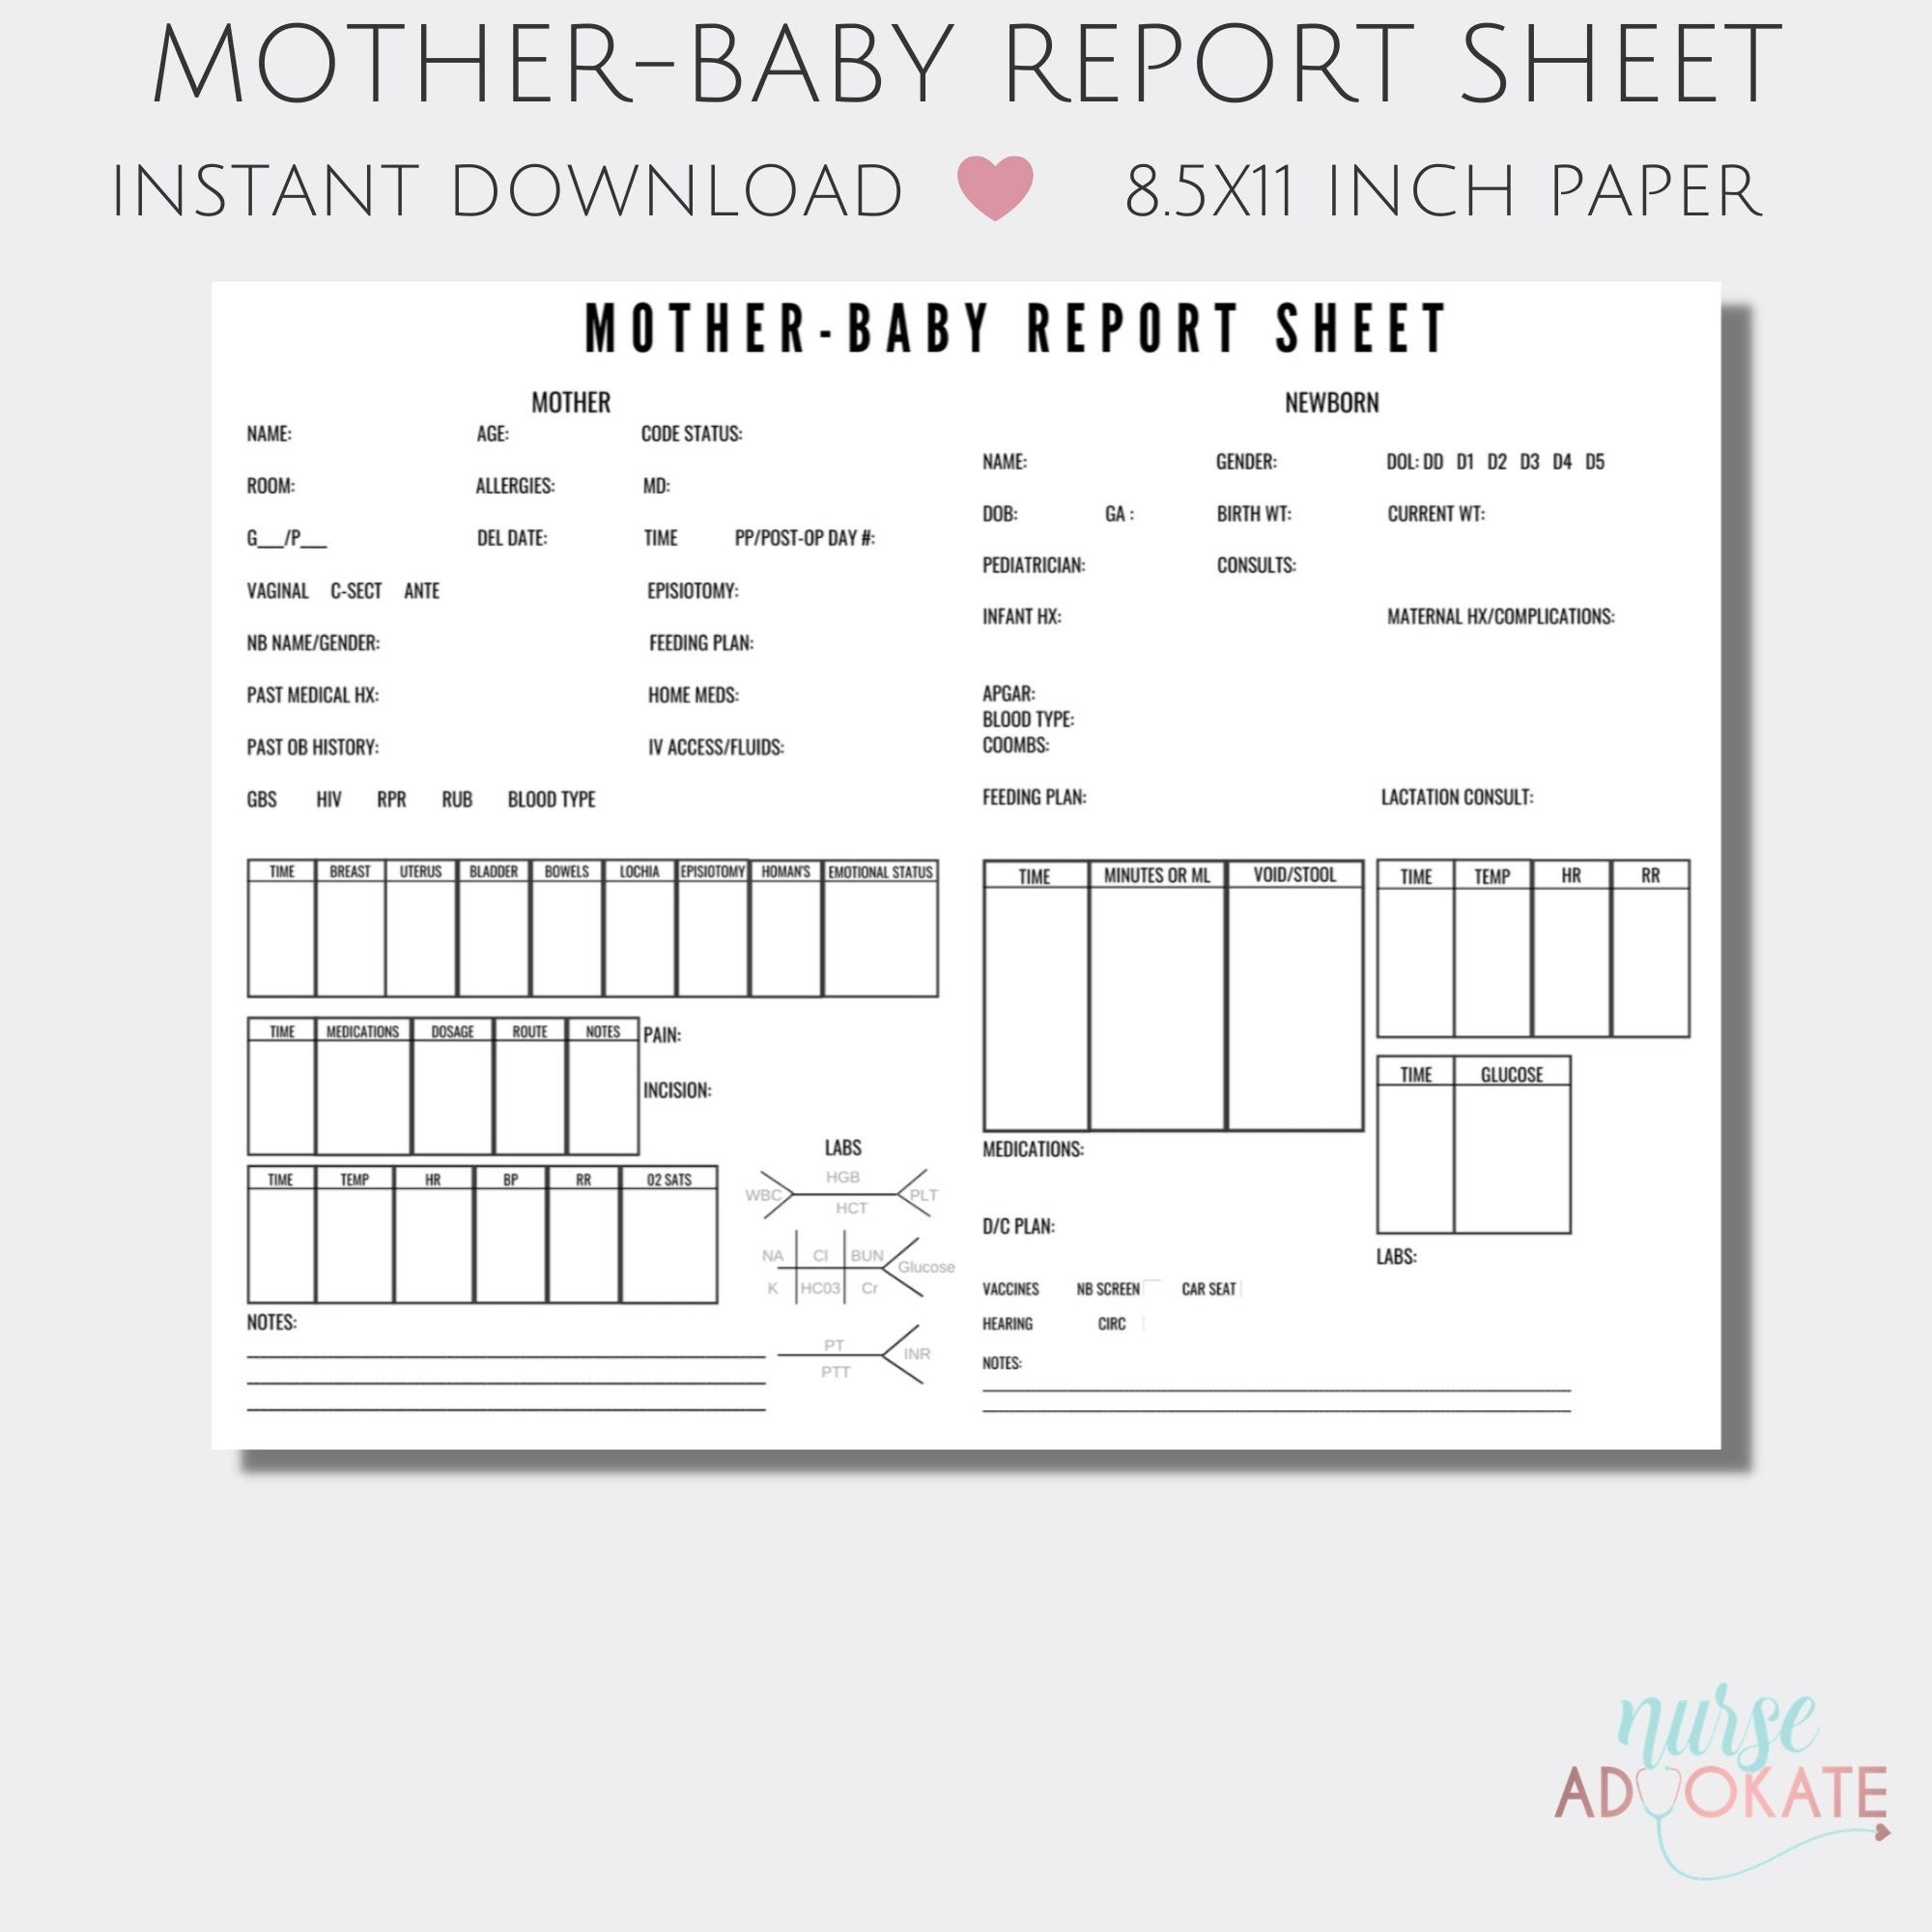 Mother Baby RN Report Sheet Template. SBAR Handoff